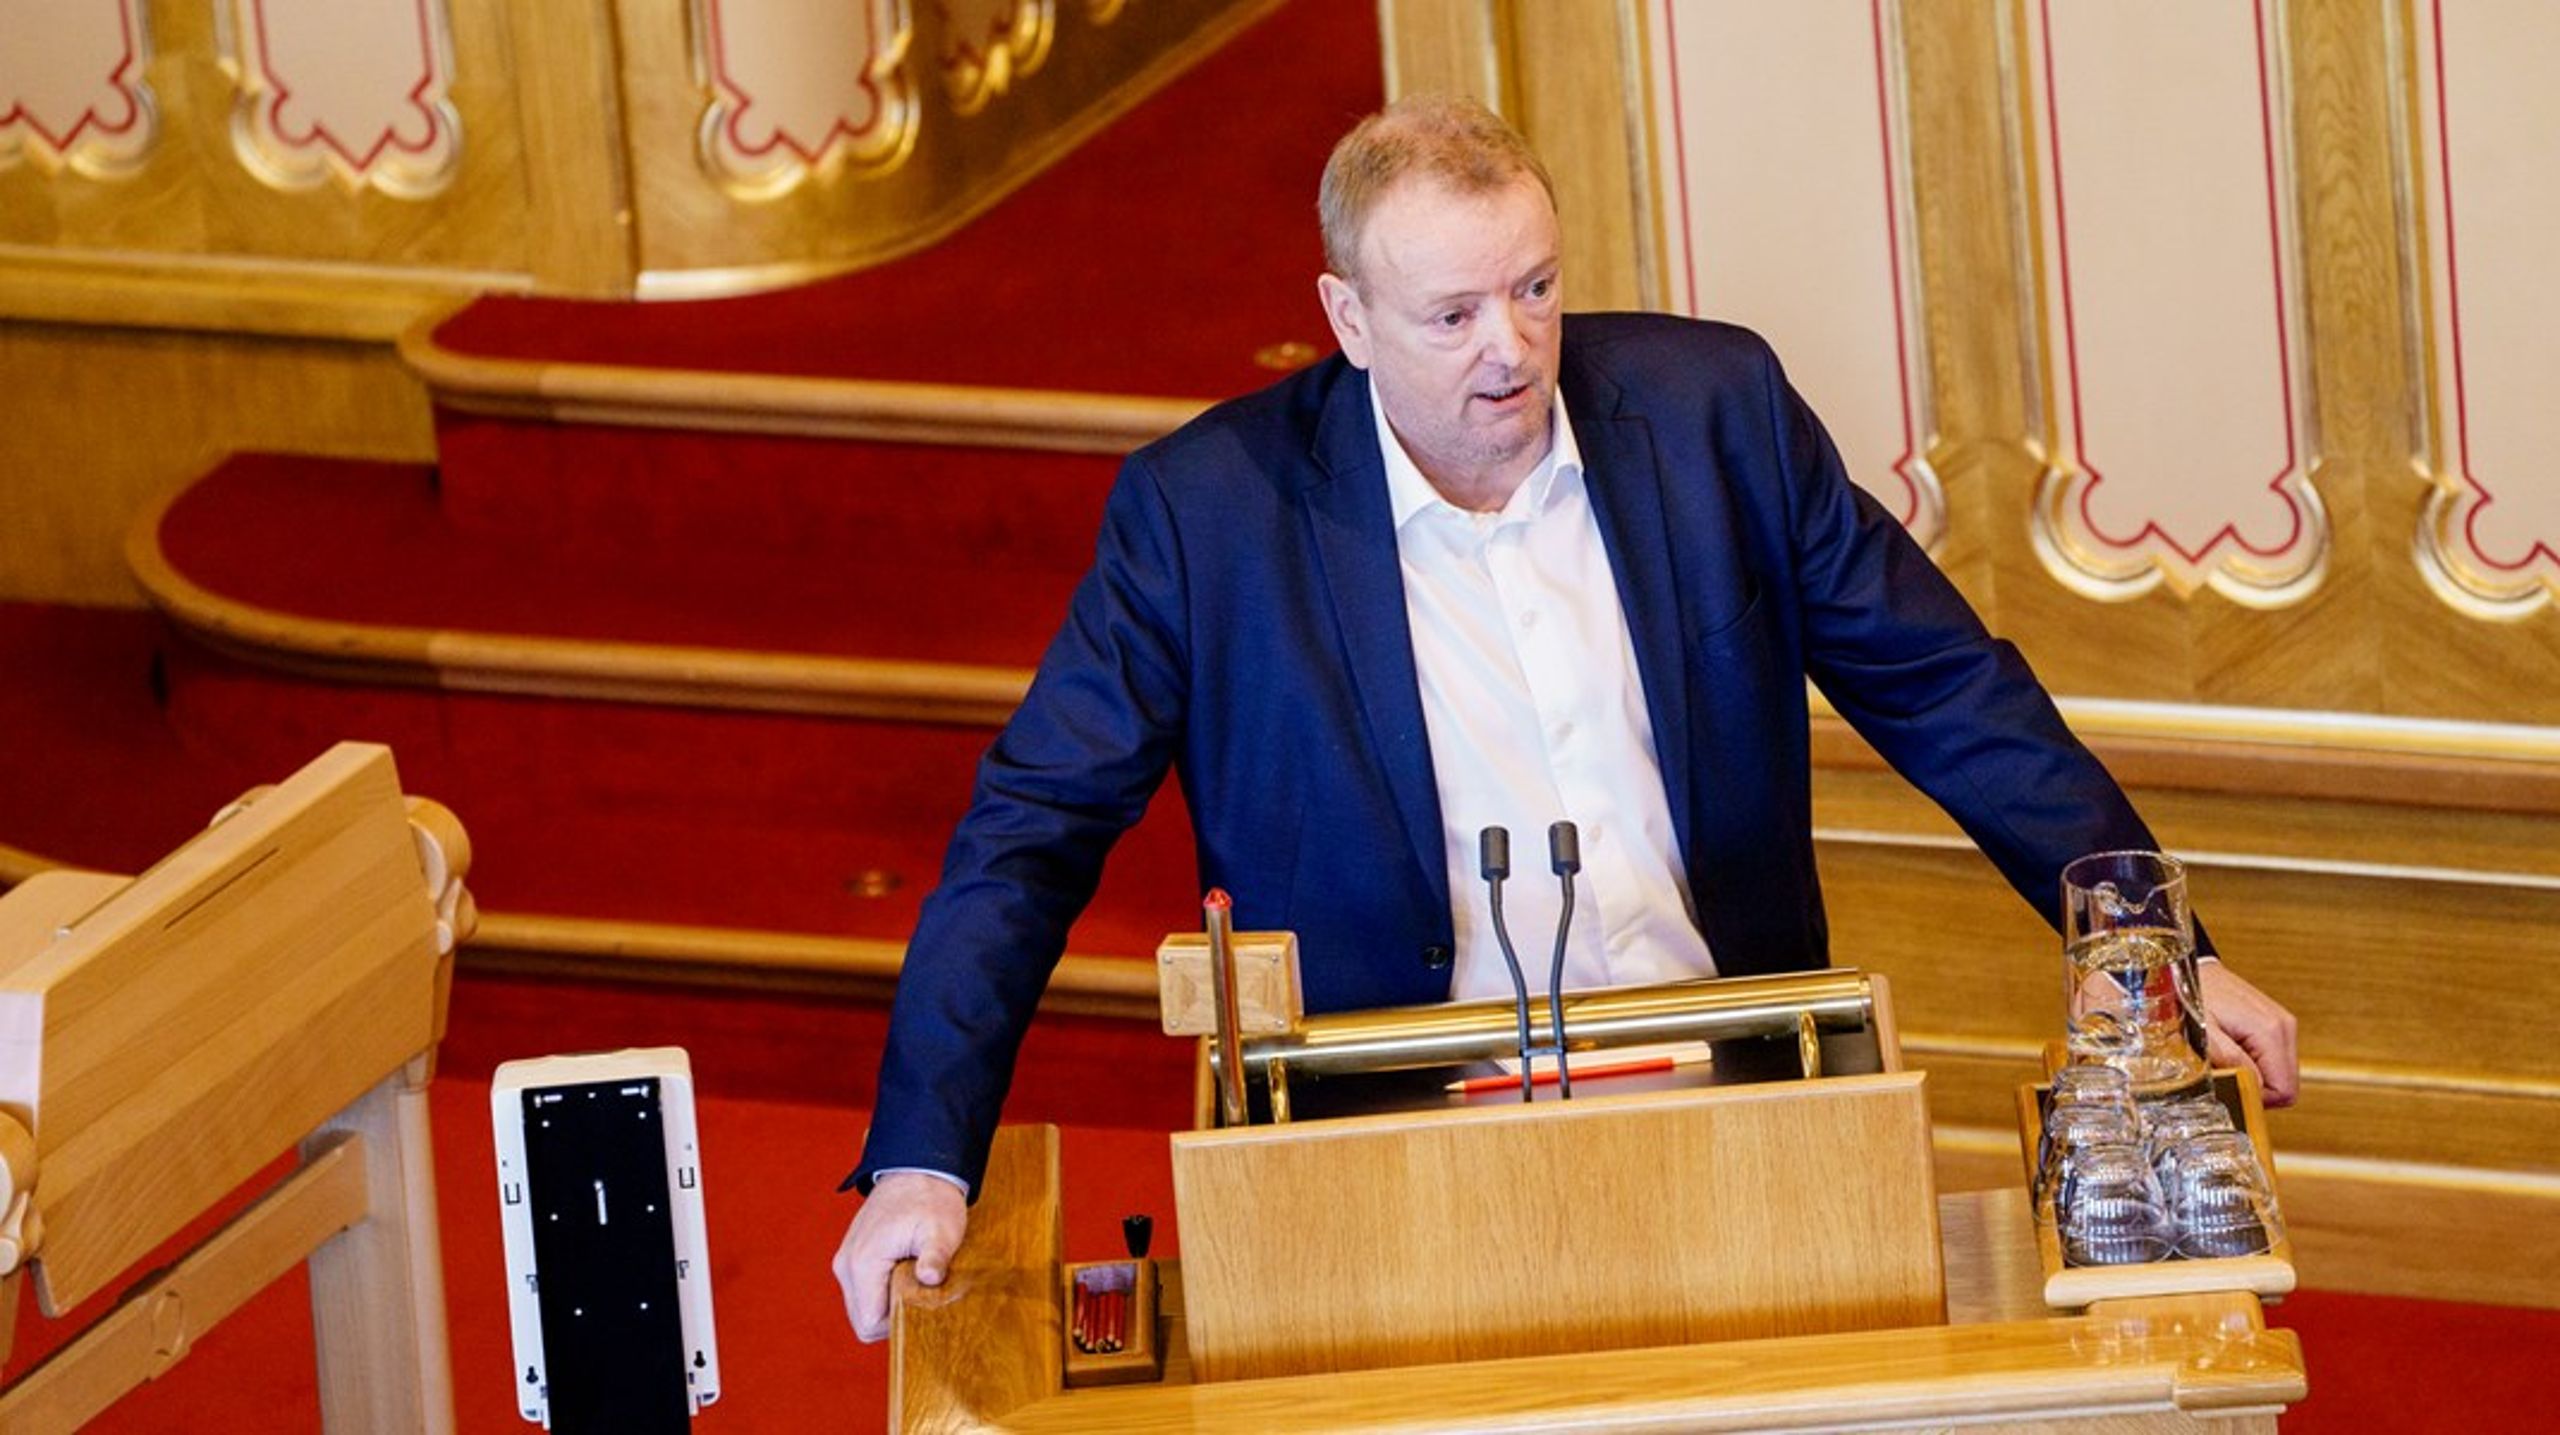 Energipolitiker Terje Halleland (Frp) jobber med et justert forslag om karbonfangst- og lagring på Melkøya som partiet hans kan støtte, og som han håper og tror kan få flertall i Stortinget 13. april.